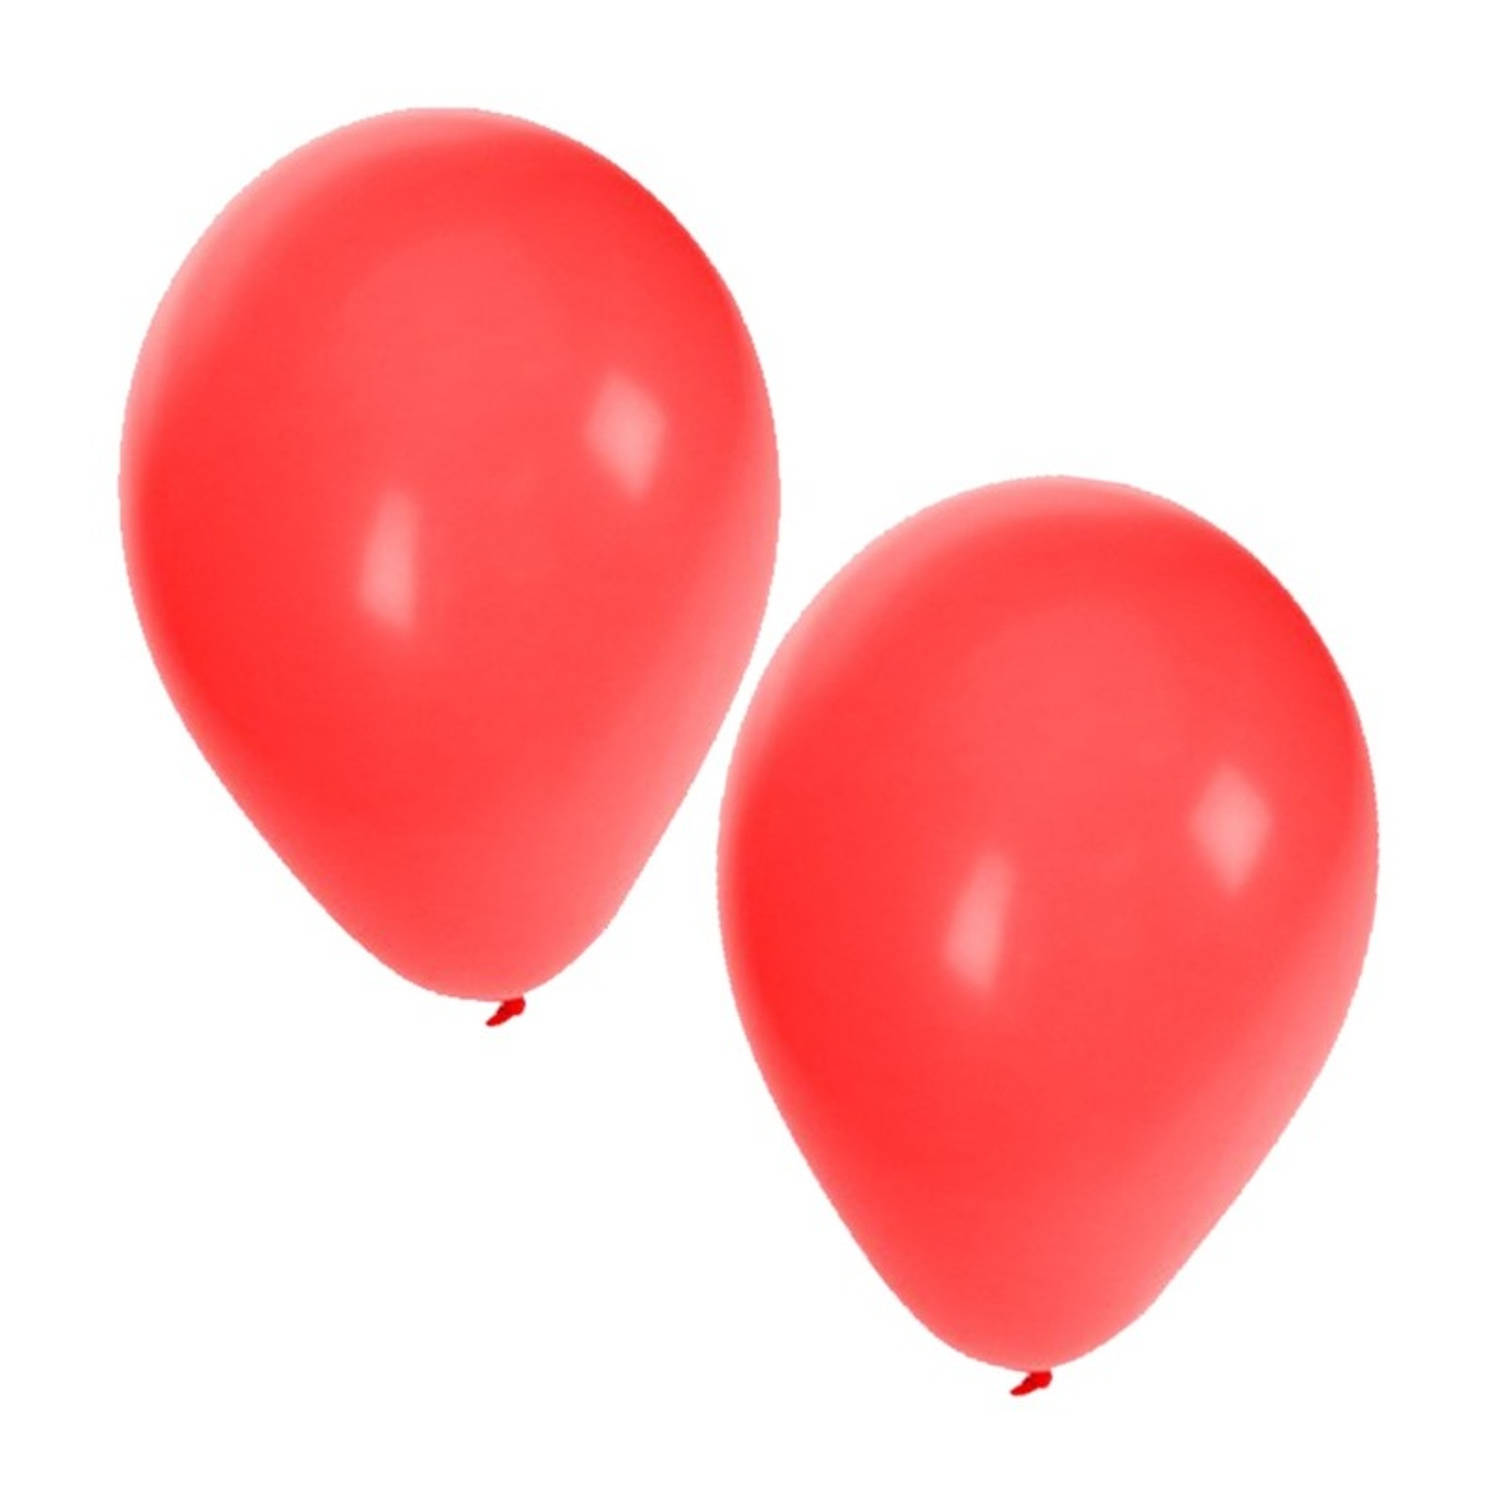 Prediken schommel Vete Rode ballonnen 15x stuks - Ballonnen | Blokker